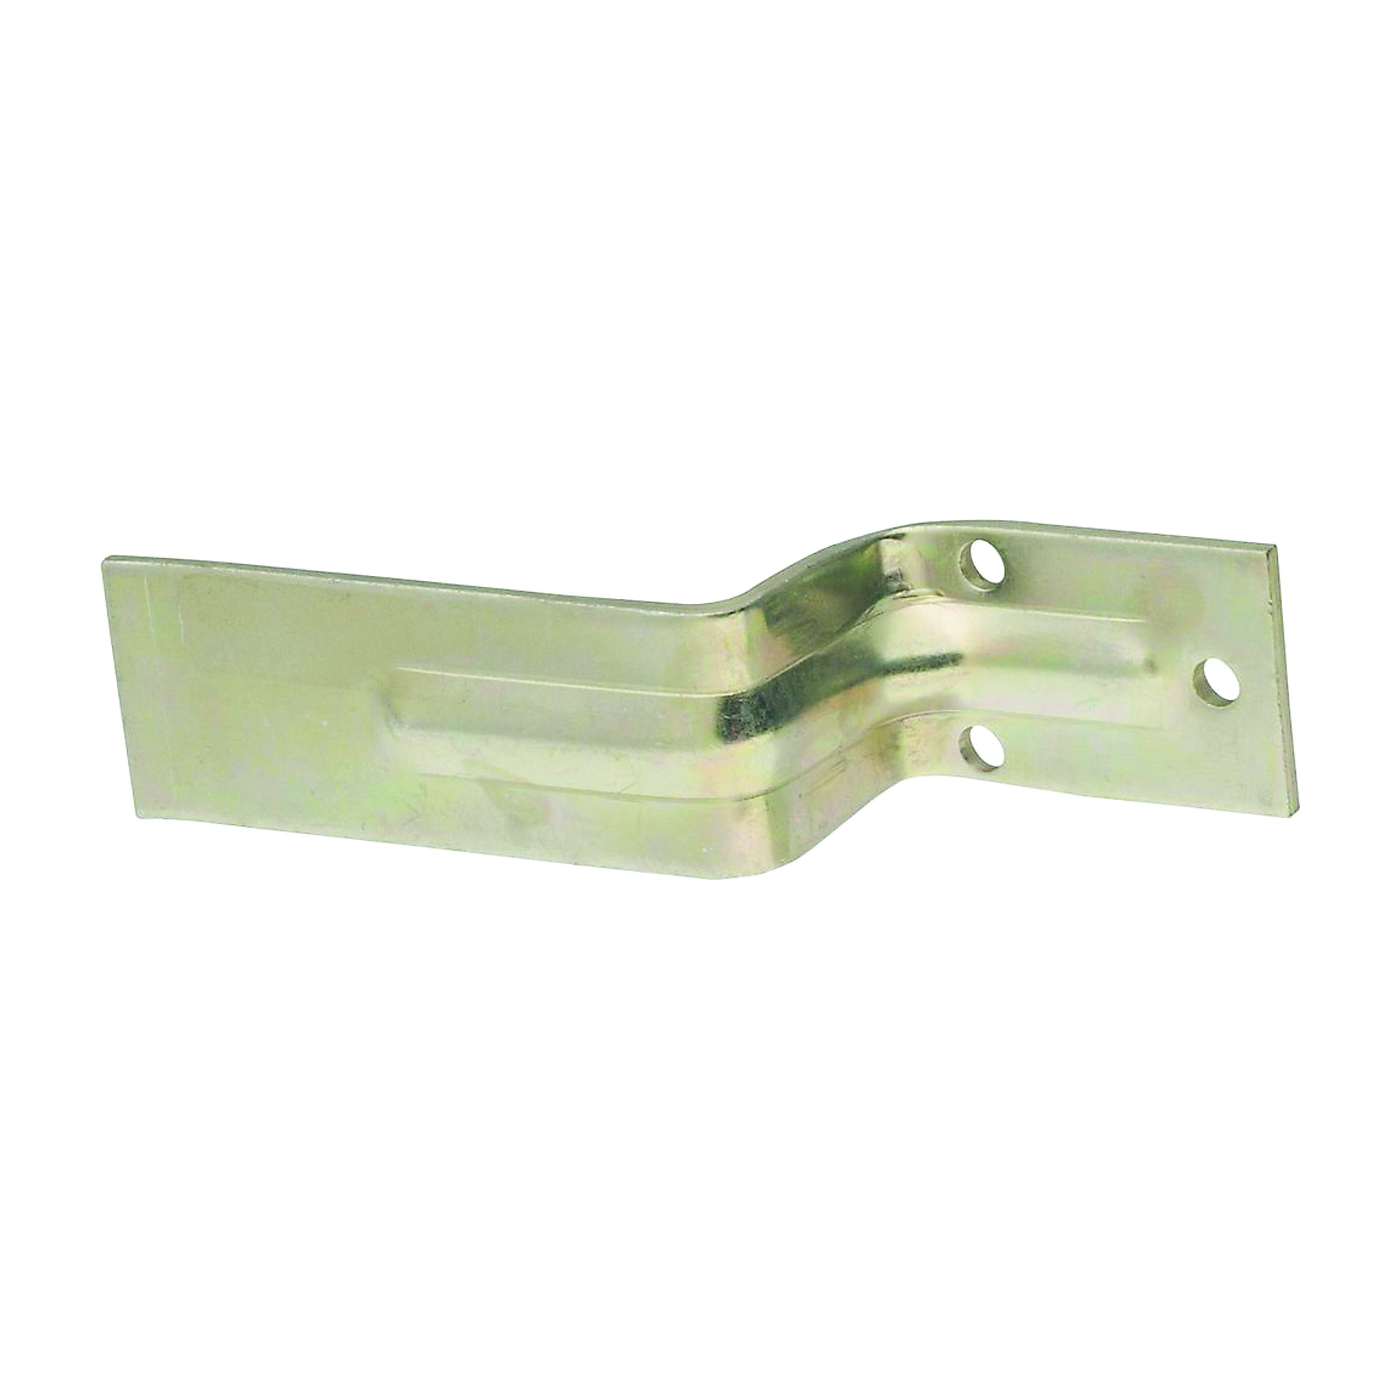 National Hardware N235-309 Bar Holder, Steel, Zinc